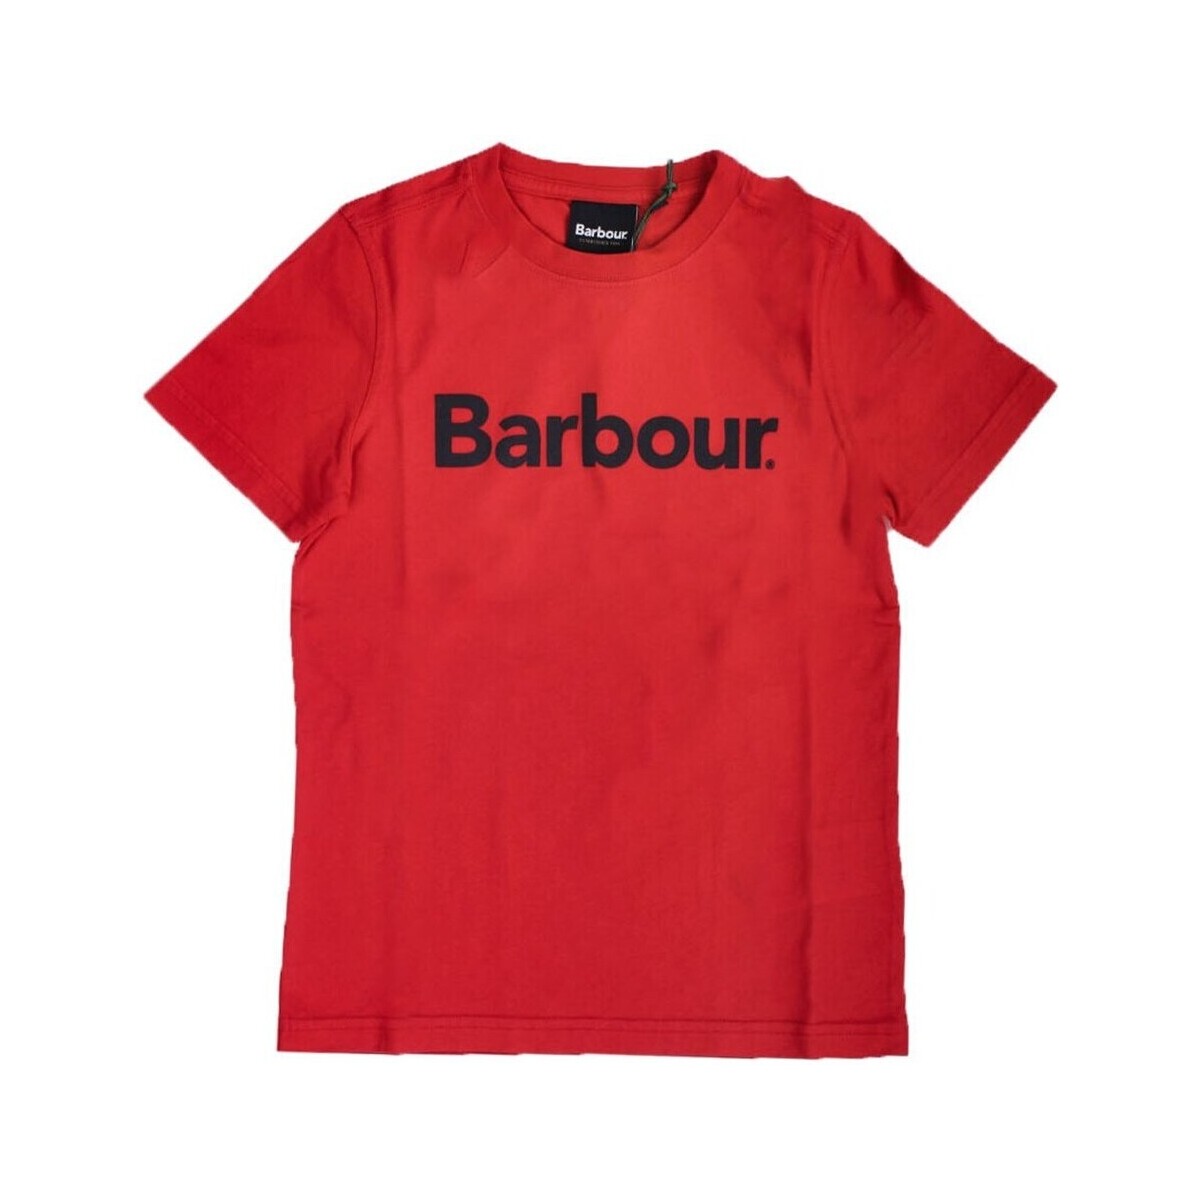 textil Dreng T-shirts m. korte ærmer Barbour CTS0060 Rød